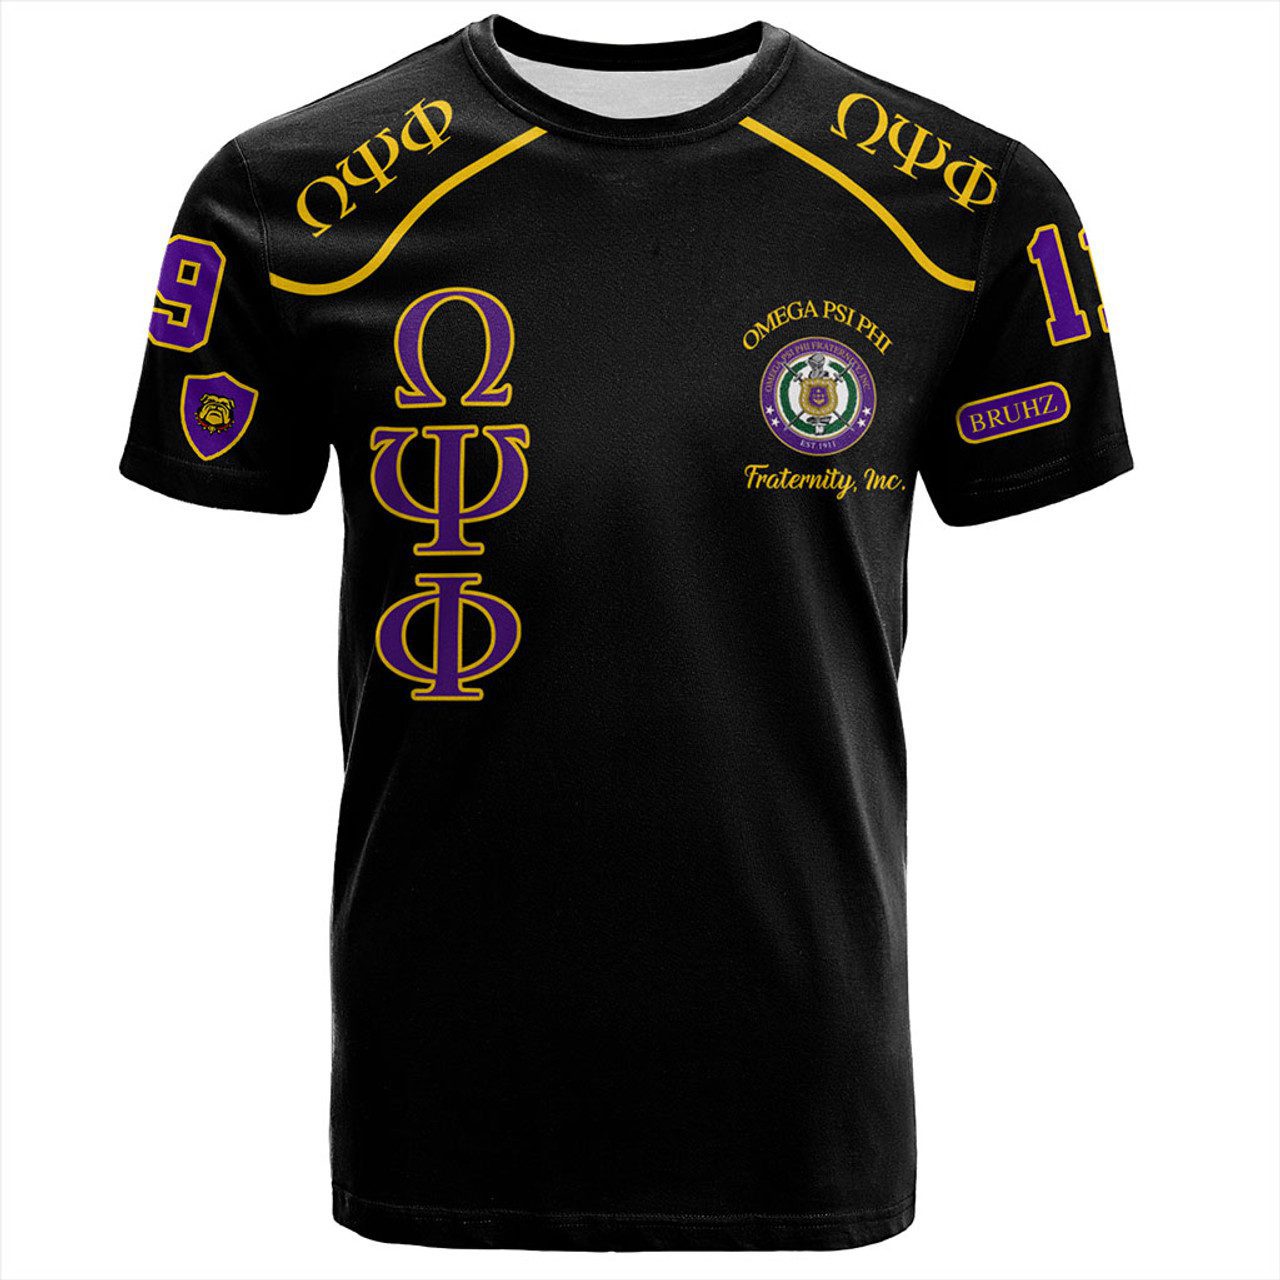 Omega Psi Phi T-Shirt Sobat Fraternity